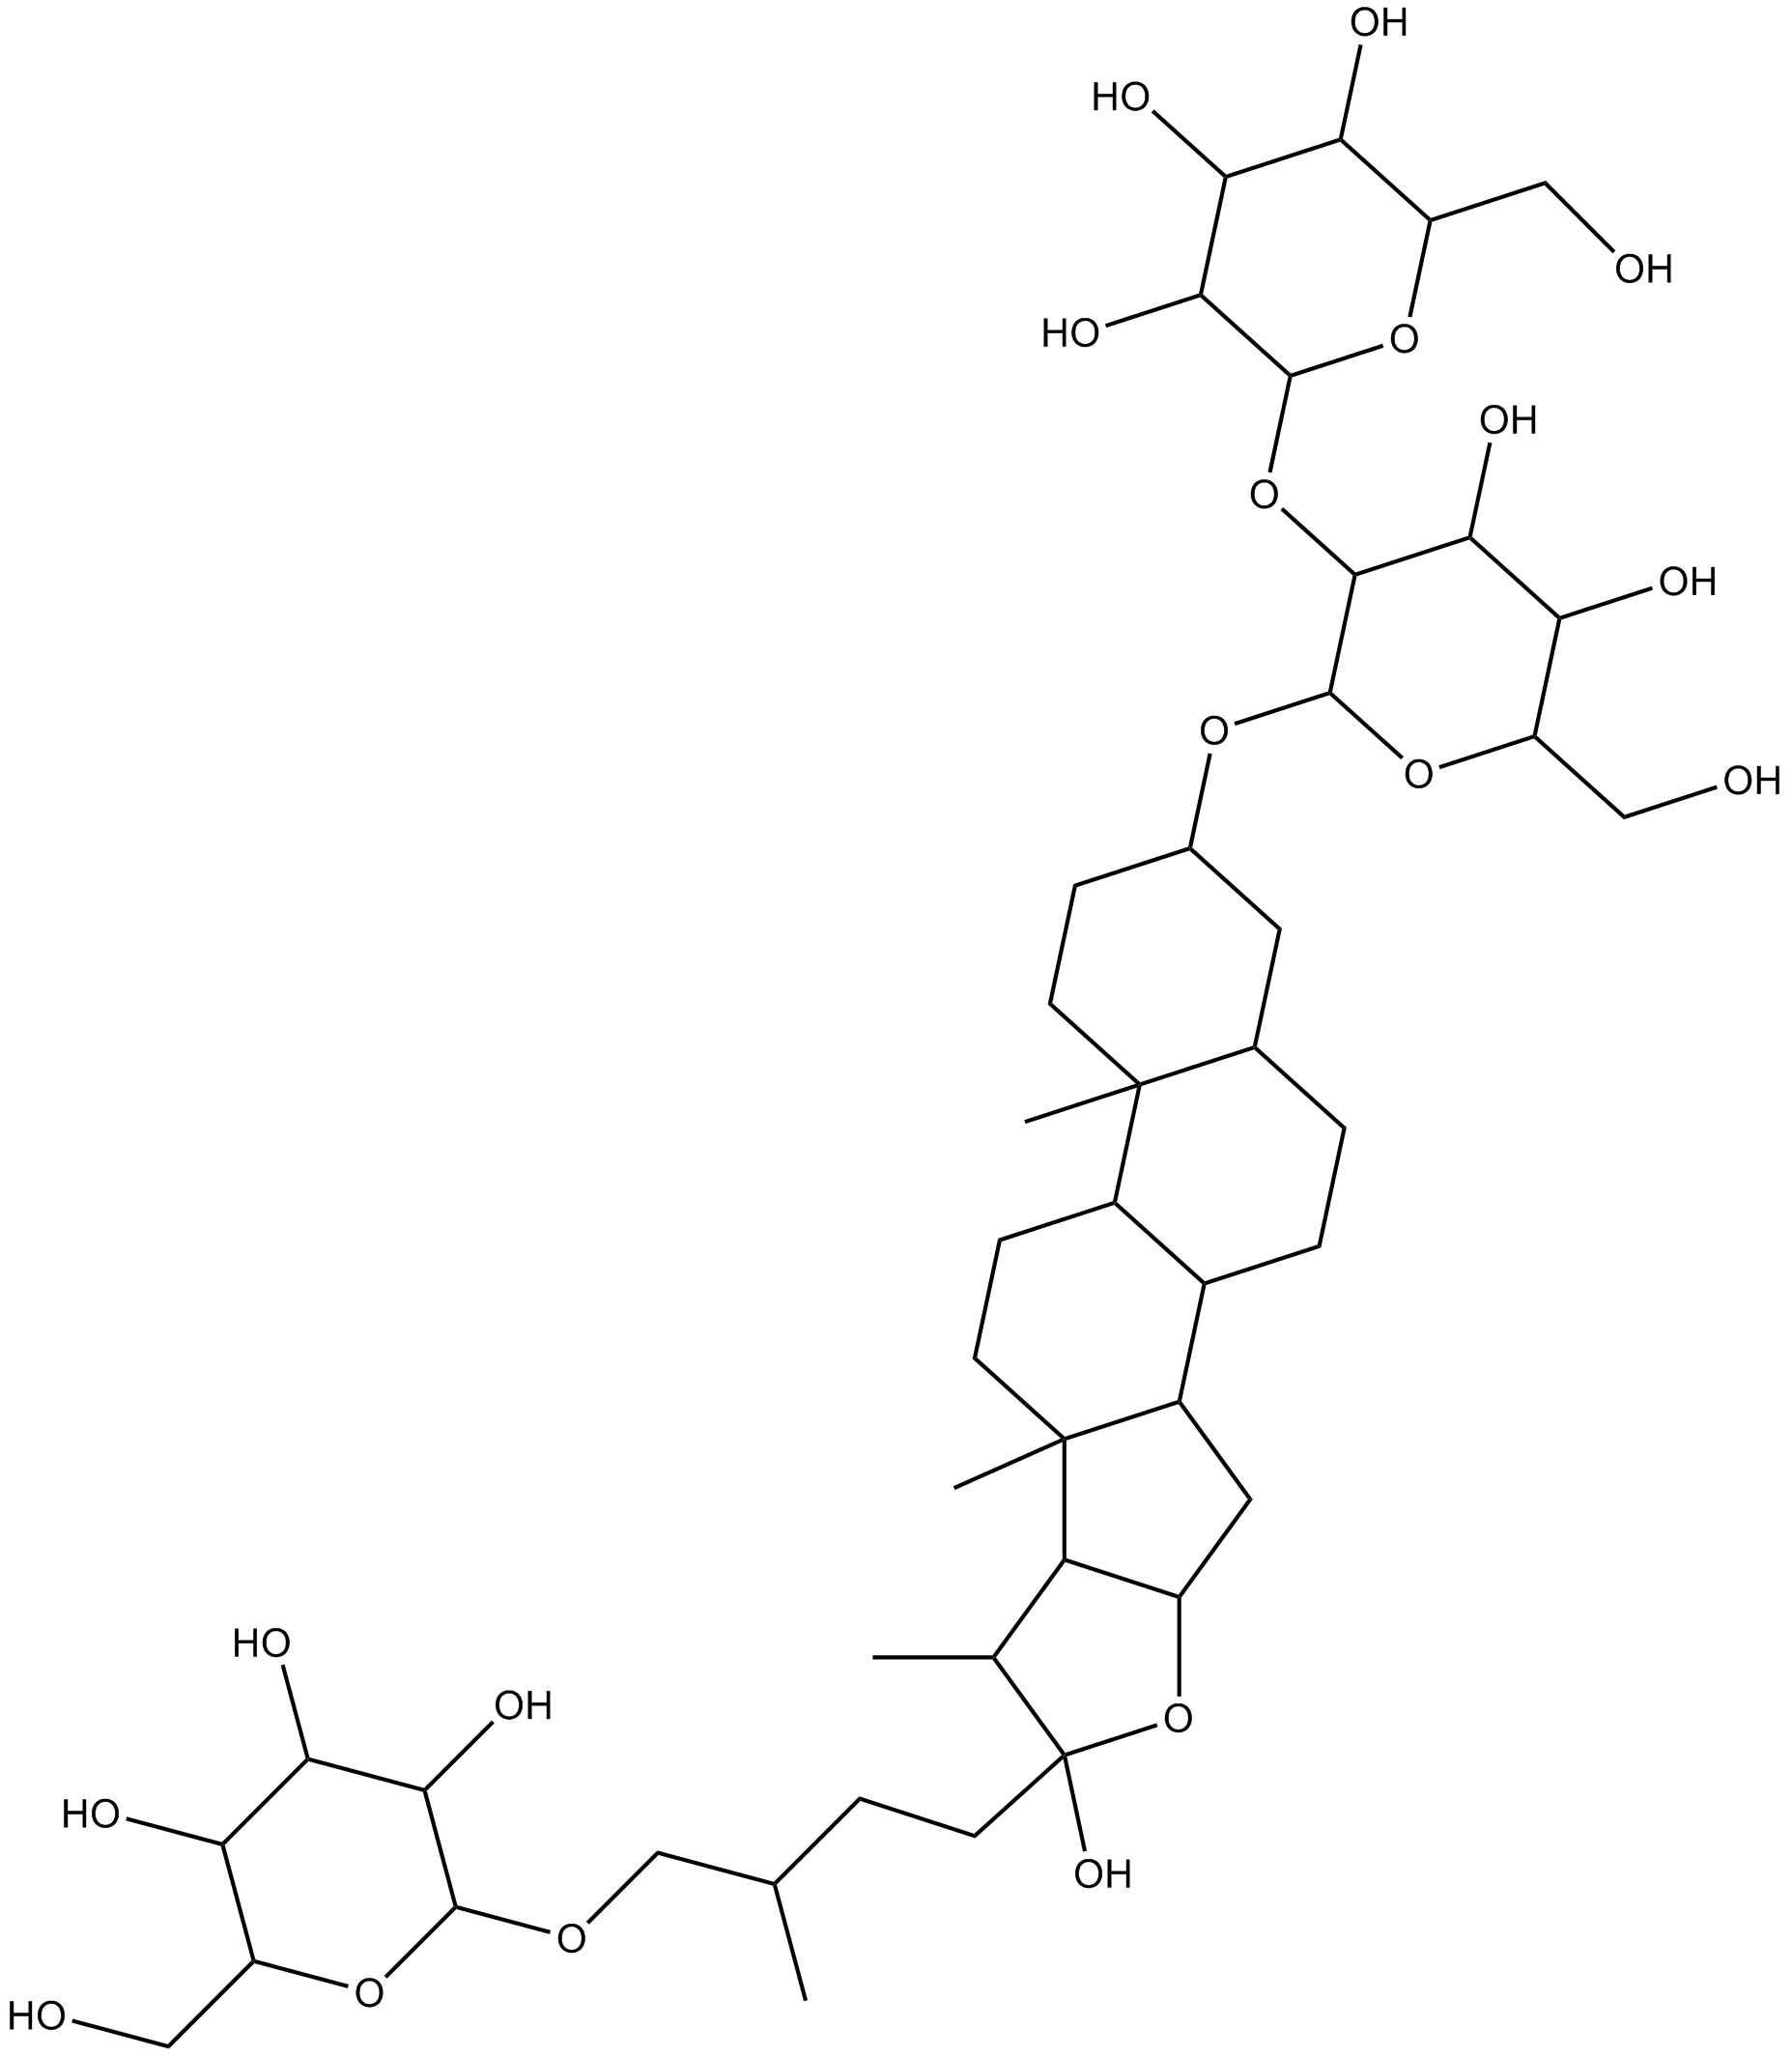 Timosaponin b- II